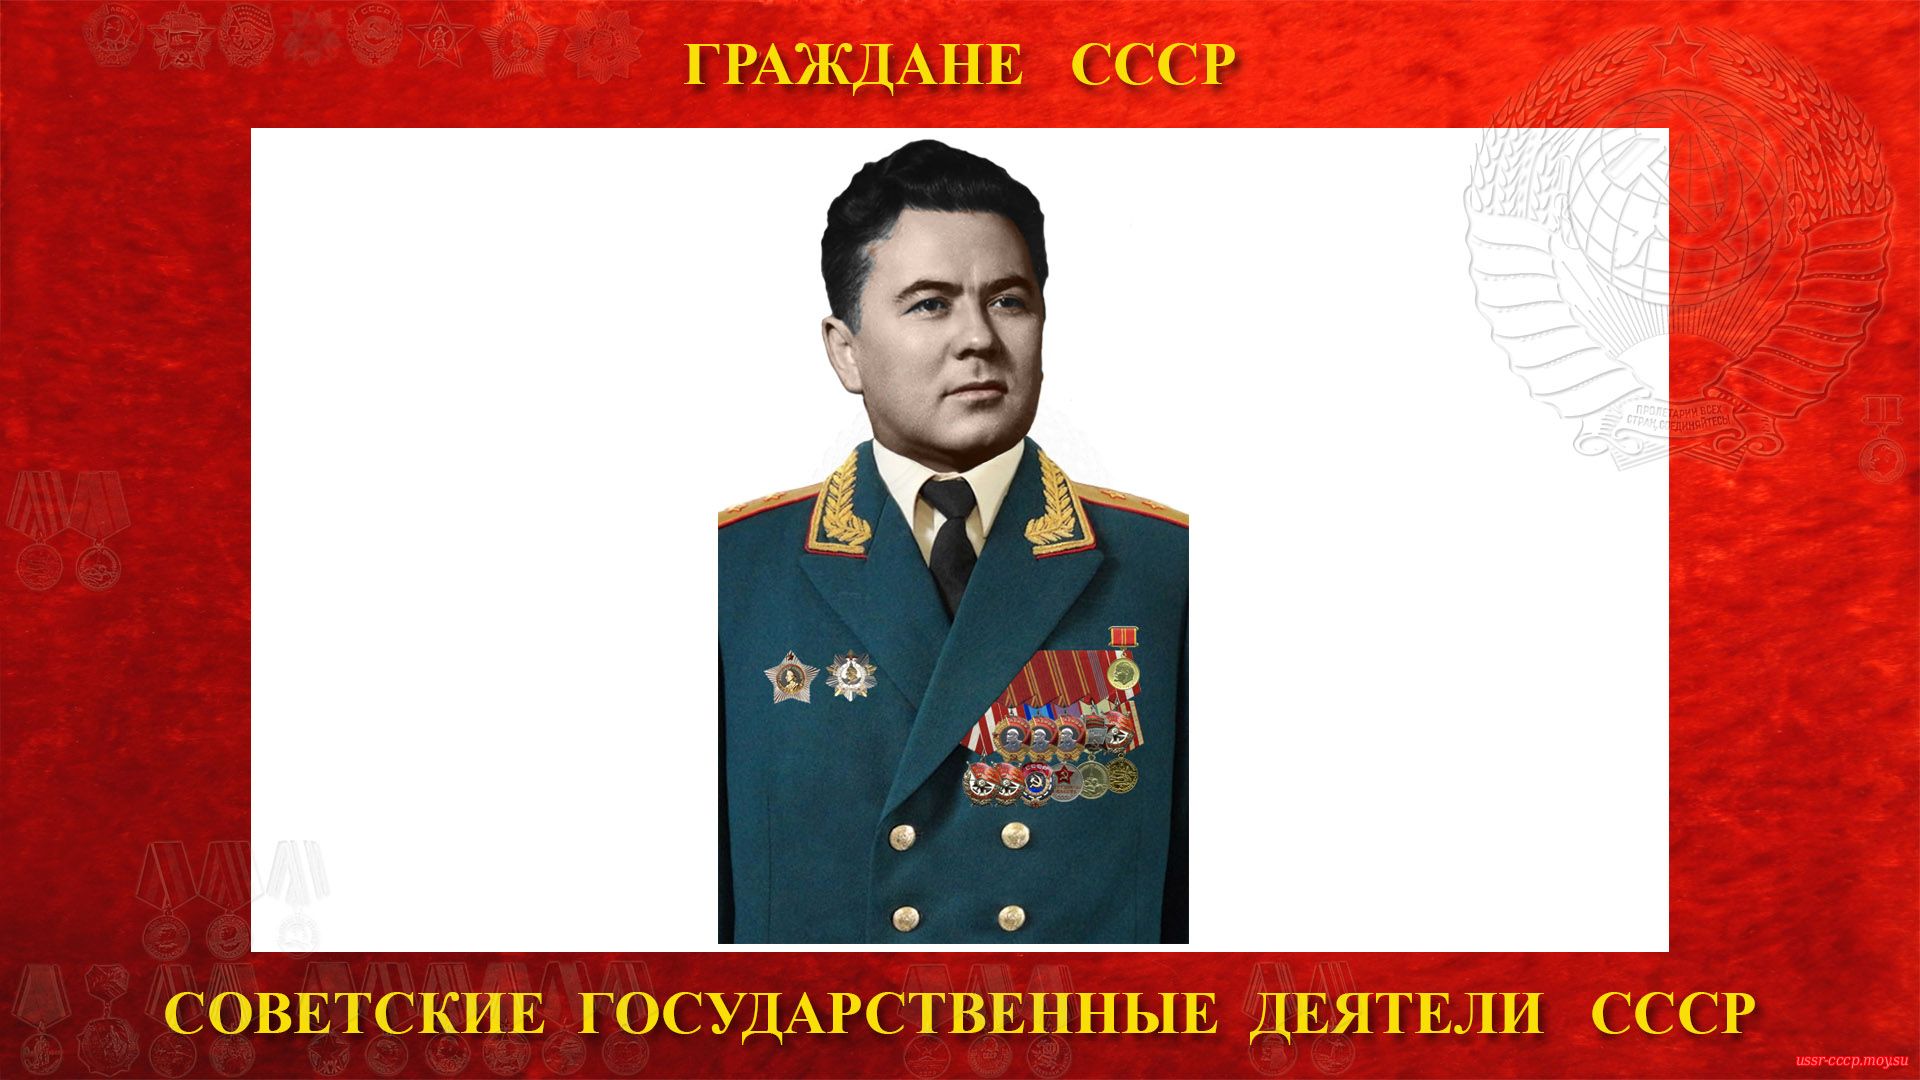 Ковалёв Иван Владимирович — Советский государственный деятель СССР